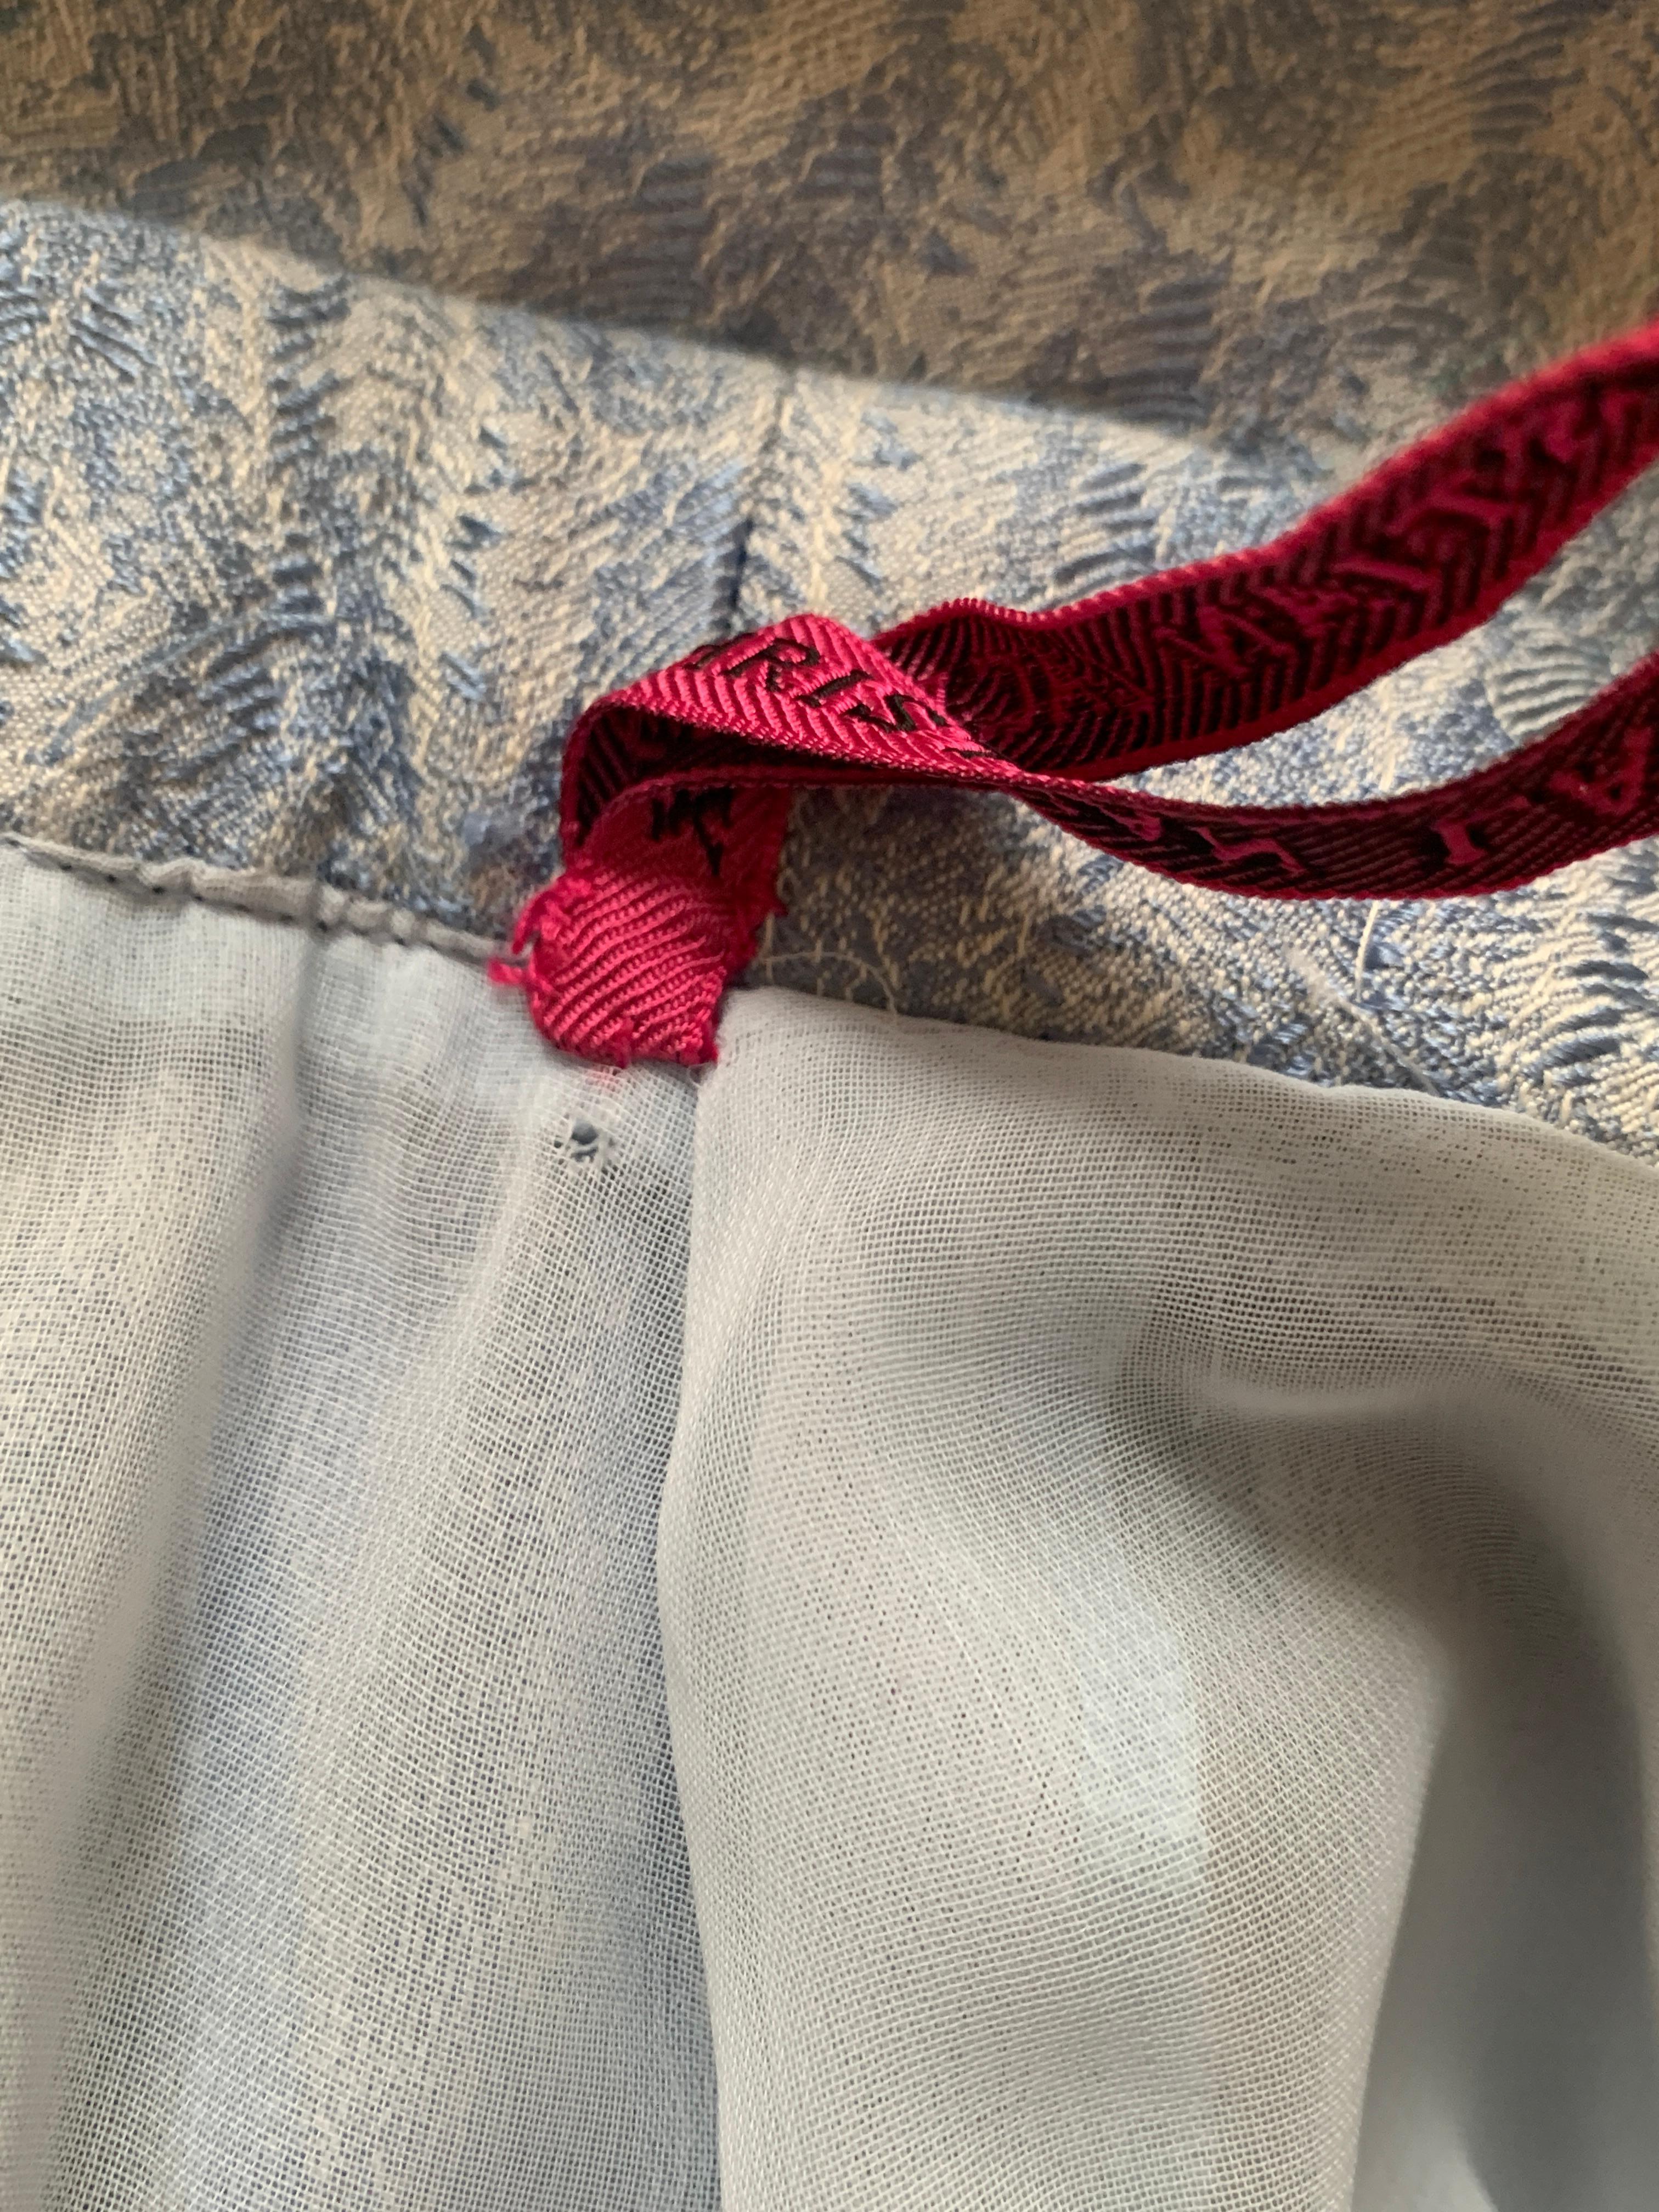 Christian Lacroix 1990s Light Blue Jacquard Skirt Suit with Applique Detail 4